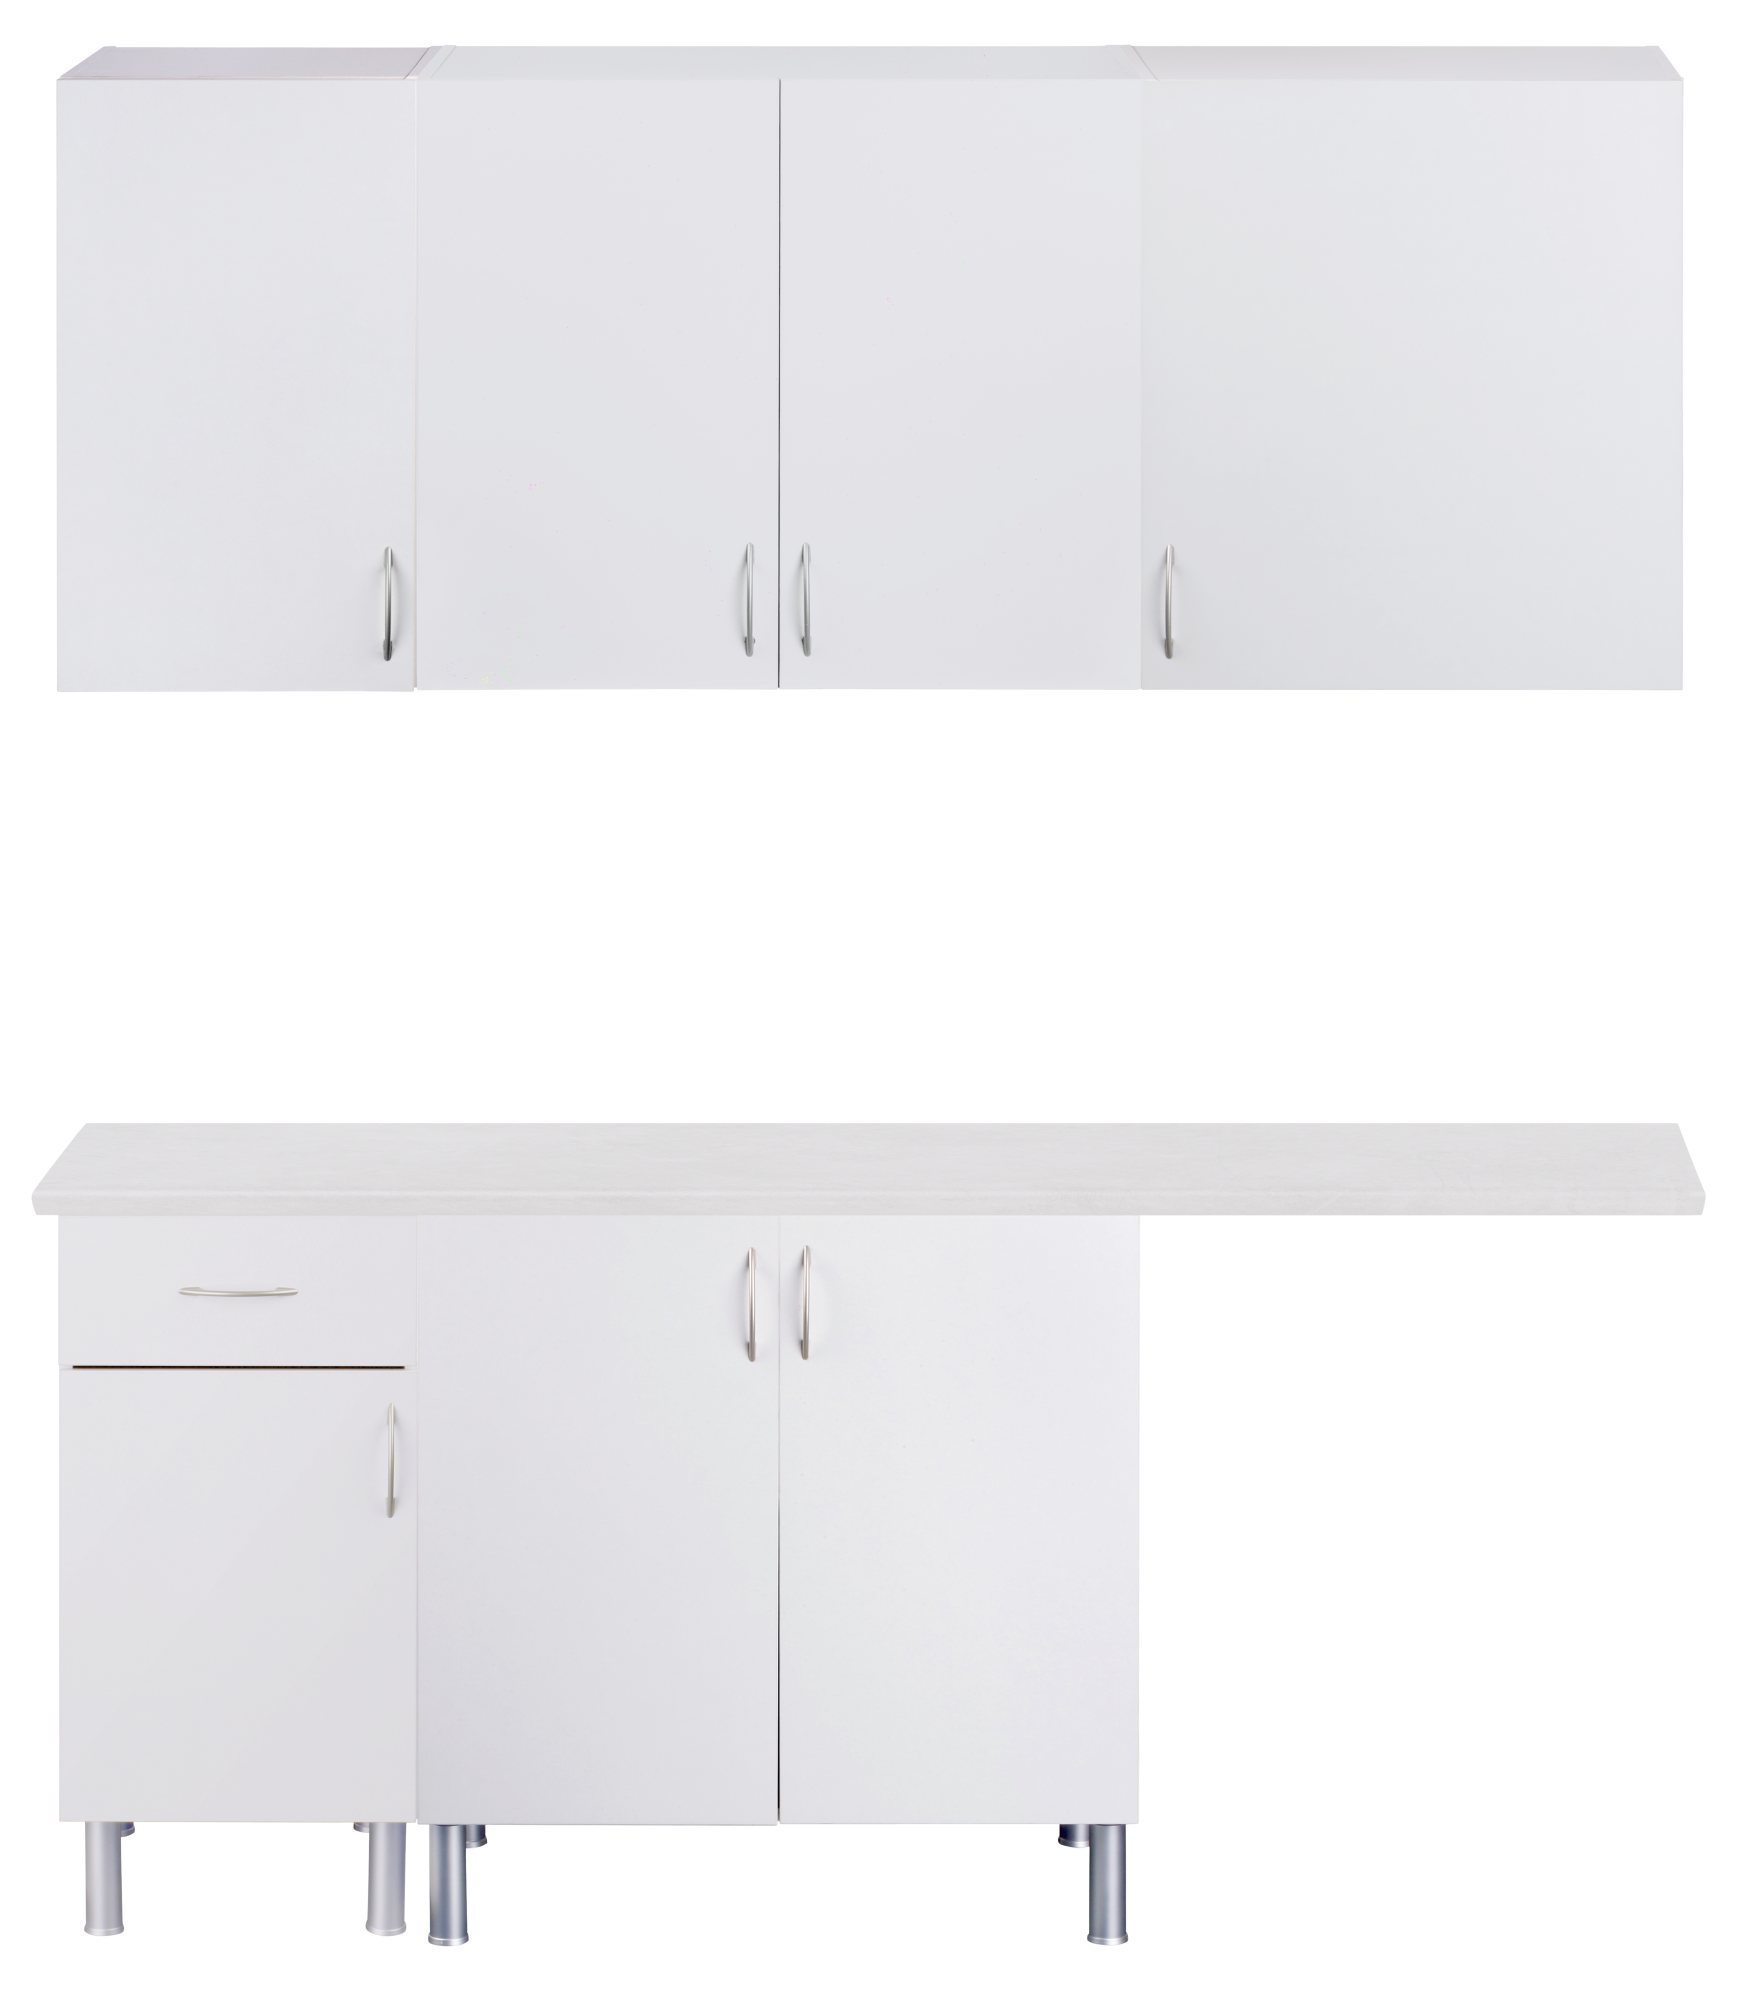 Mueble lavadero en kit basic new blanco 180cm con 4 muebles altos y 3 bajos